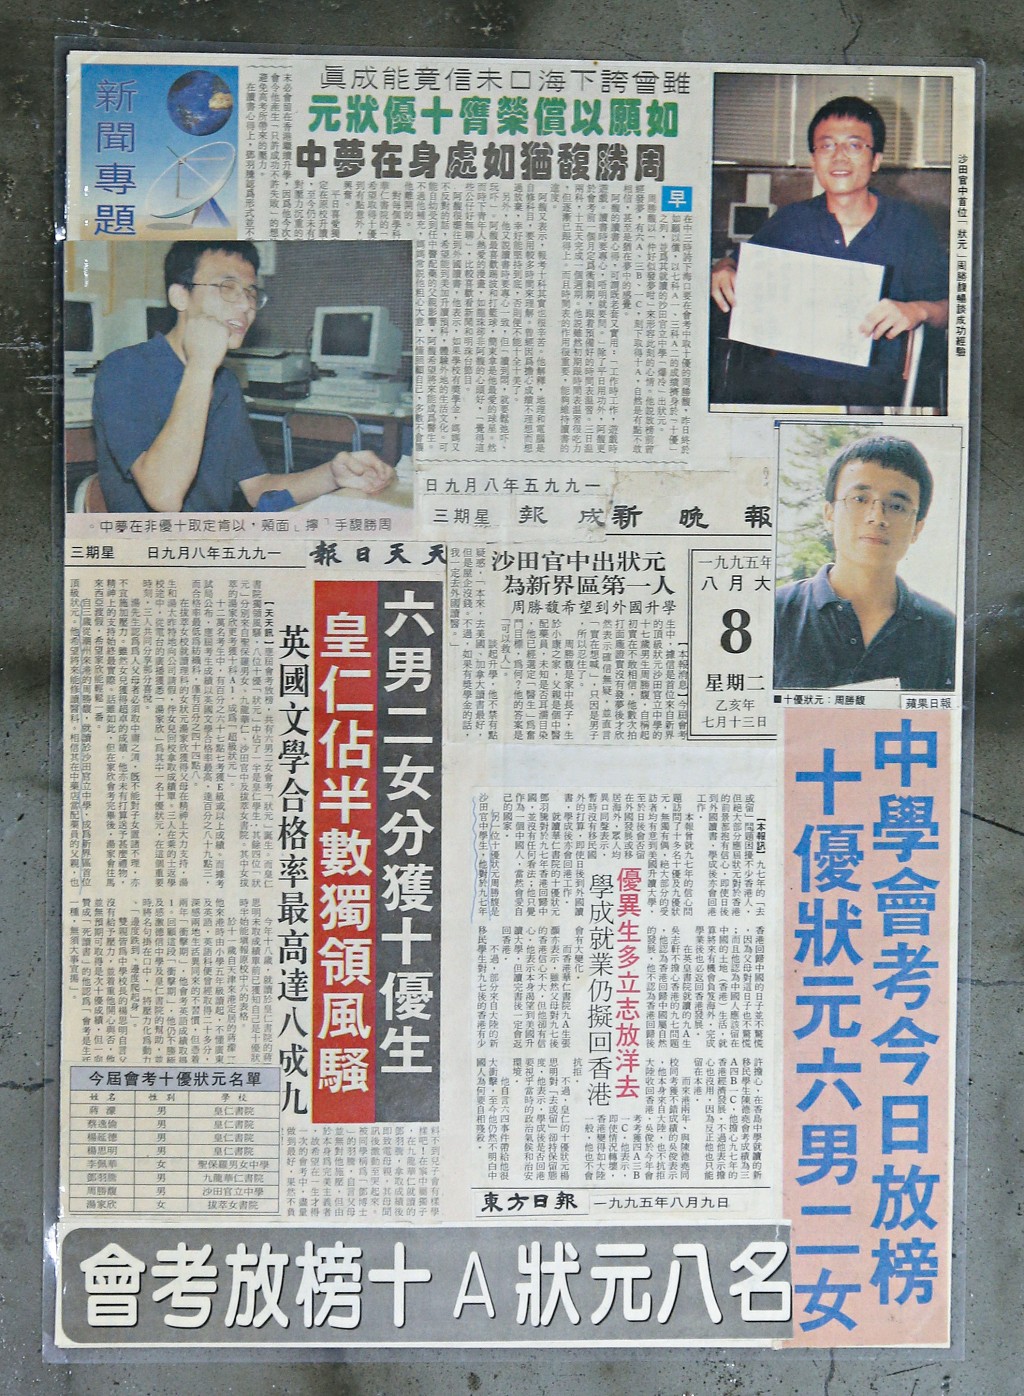 周胜馥在1995年会考取得10A，是新界区首位十优状元。他的父亲一直收藏剪报。